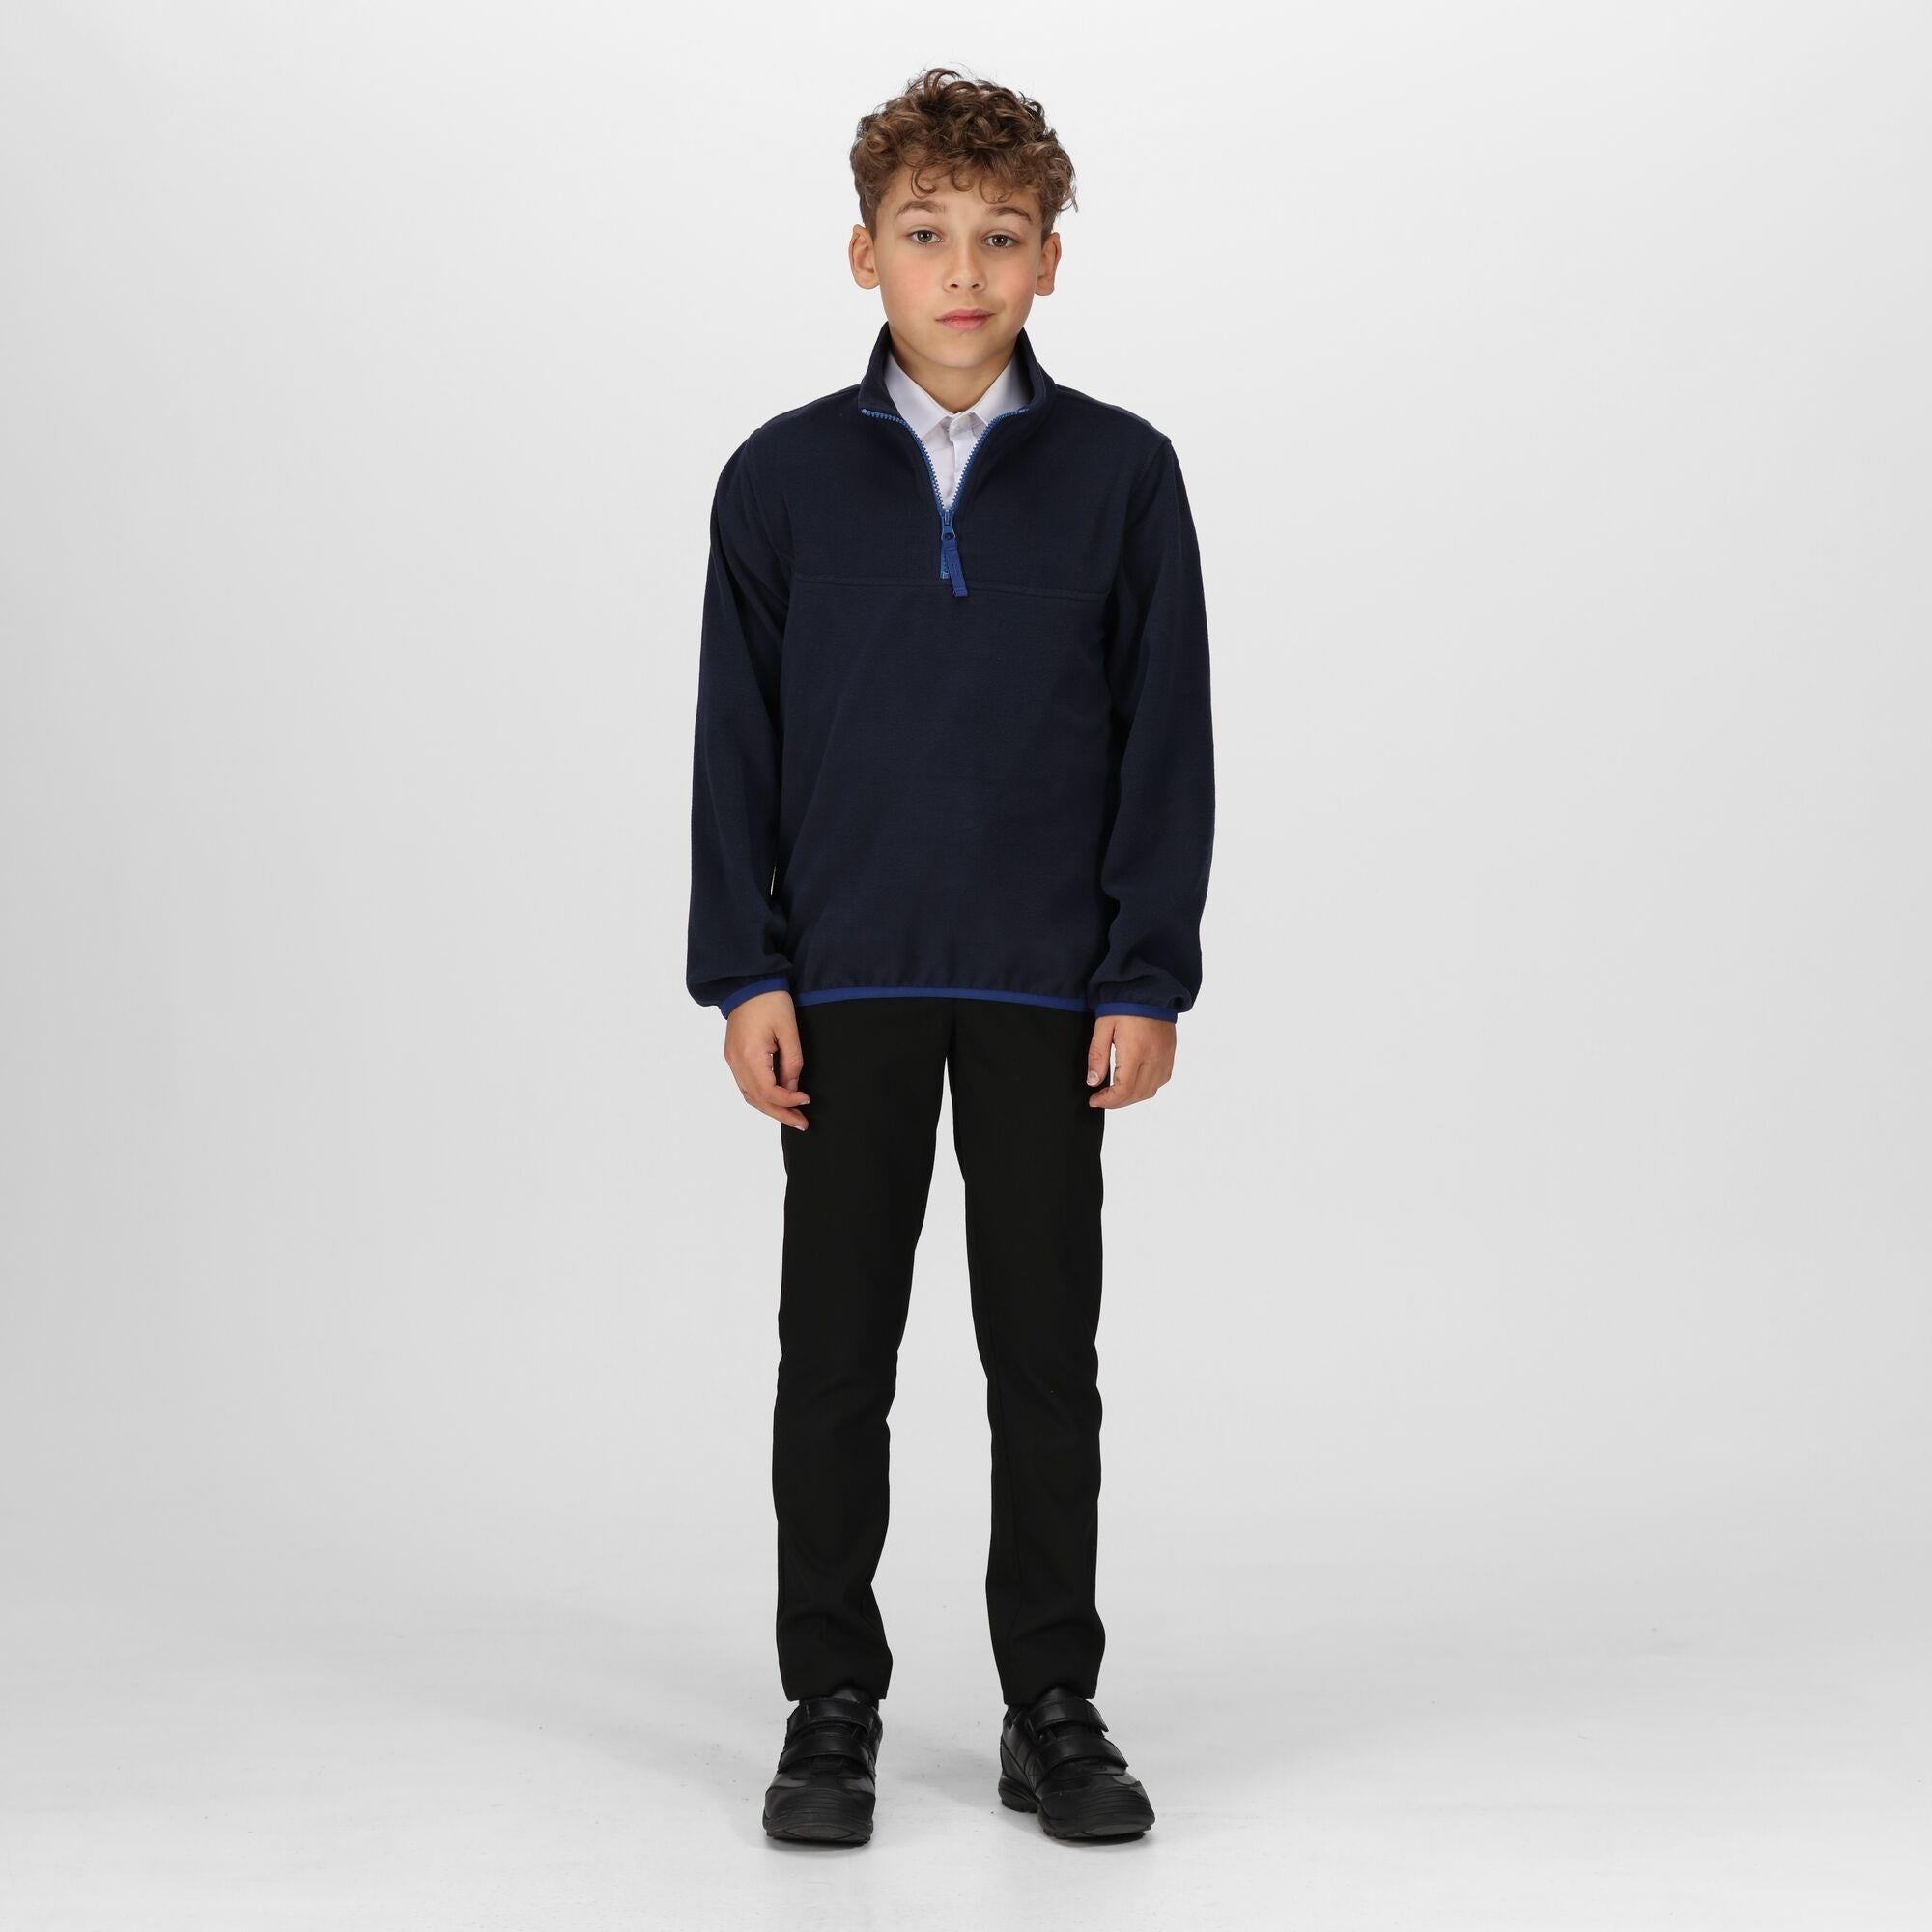 Regatta Junior navy kid's warm quick-dry half-zip micro-fleece #TRF679